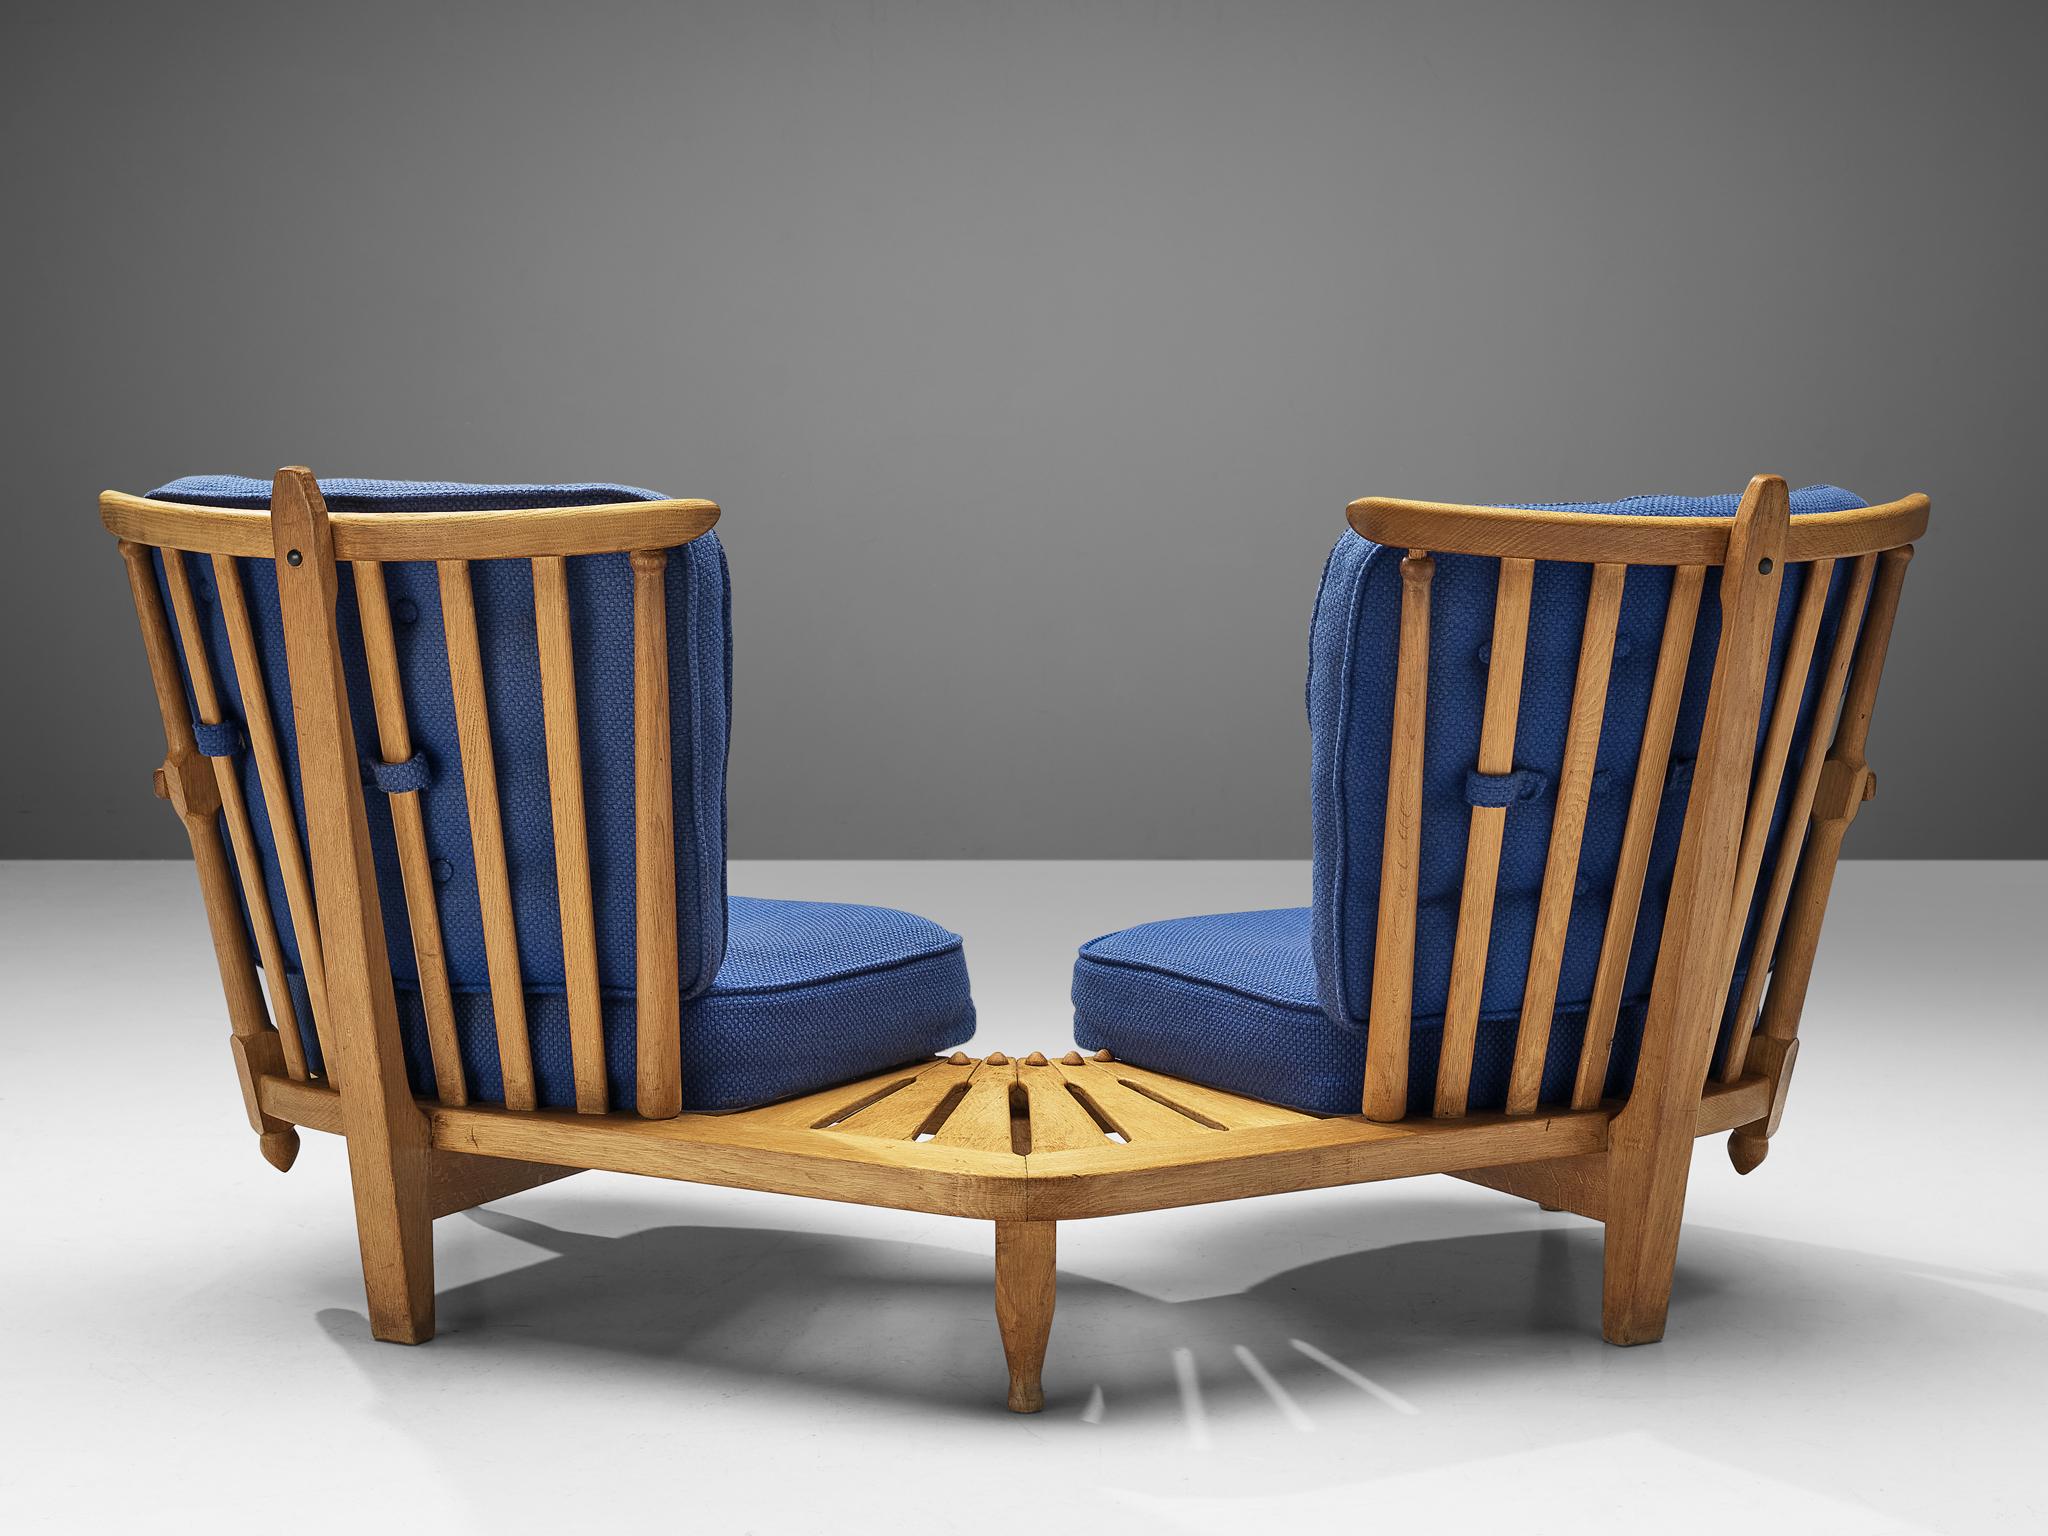 Guillerme & Chambron pour Votre Maison, chaises longues couplées avec table d'appoint, tissu, chêne, France, années 1960 

Guillerme & Chambron sont connus pour leurs meubles en chêne massif de haute qualité, dont celui-ci est un autre exemple. Le